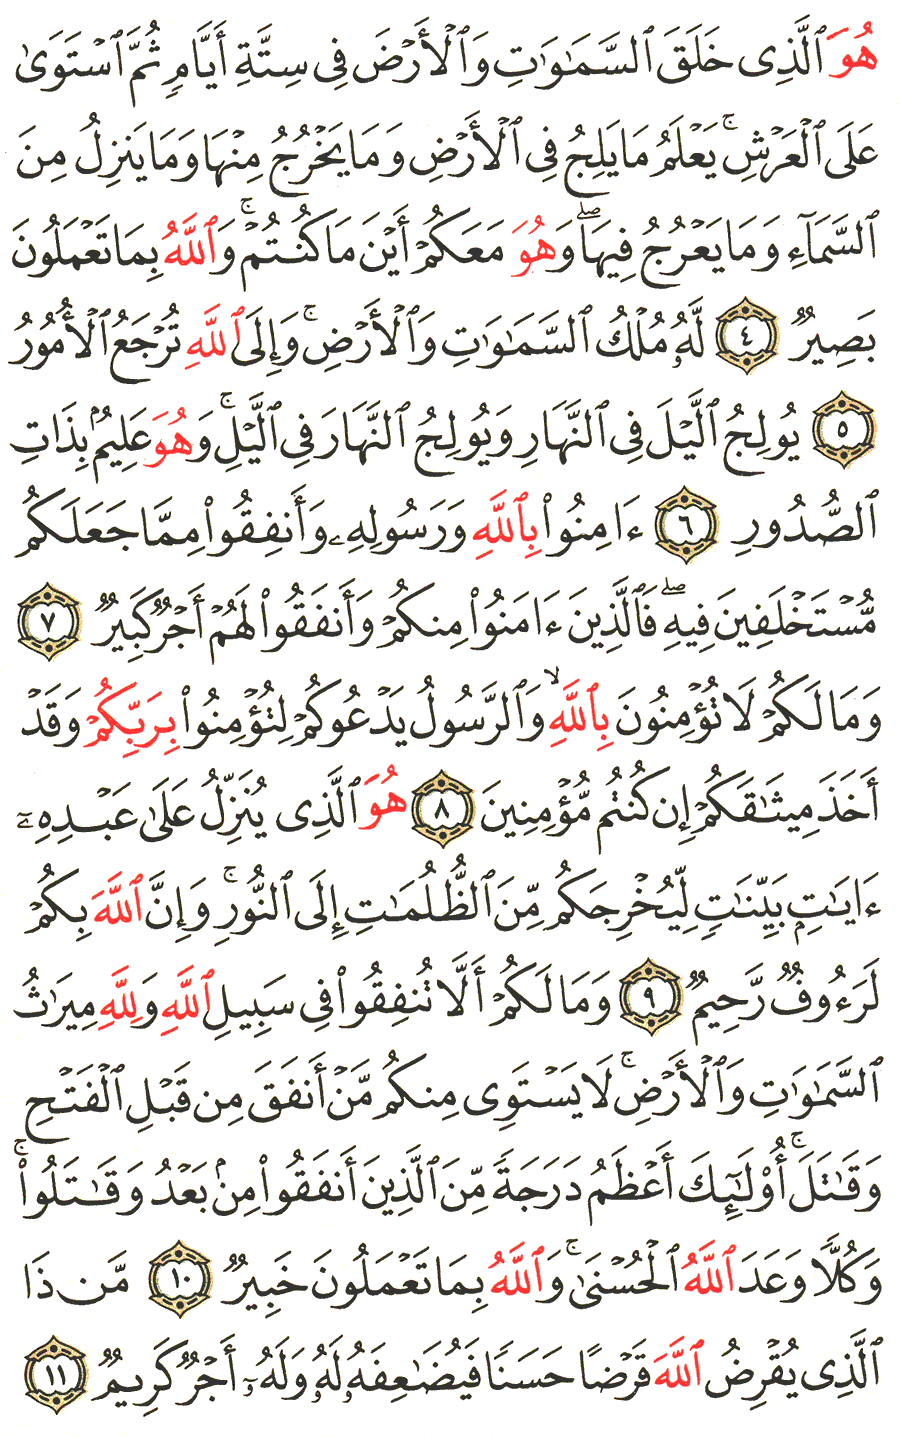 الصفحة 538 من القرآن الكريم